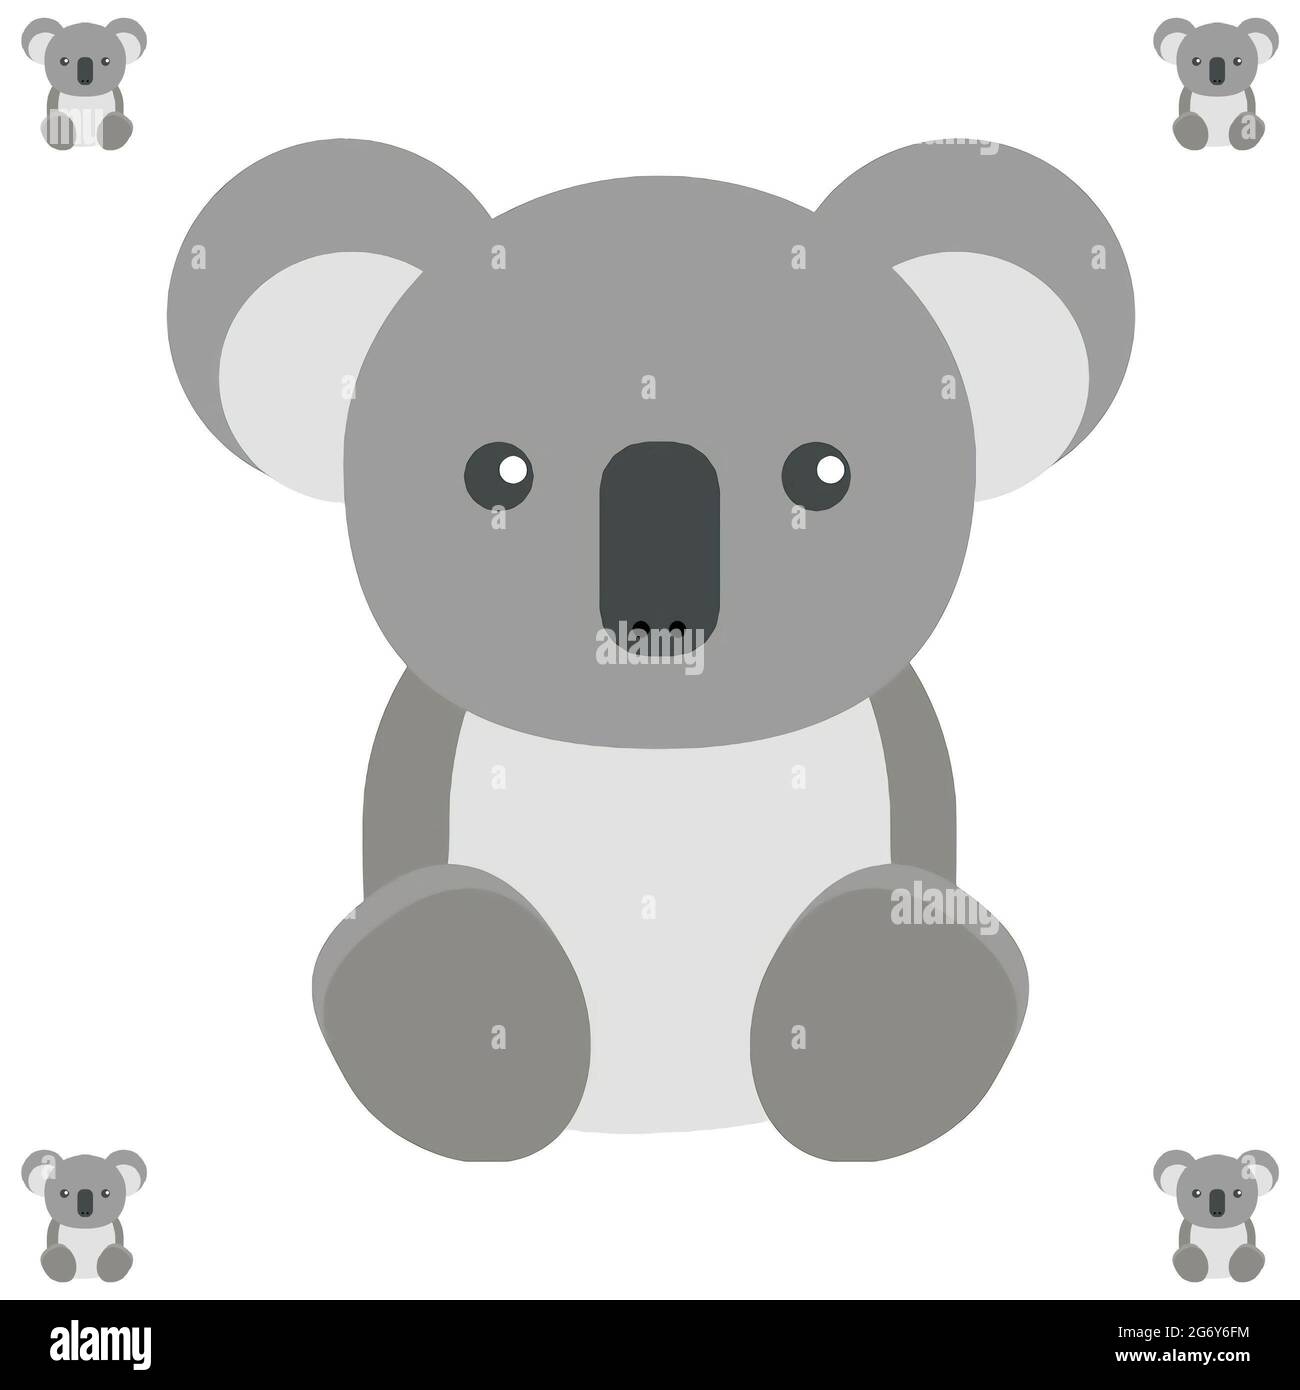 Semplice illustrazione di adorabili orsi koala su sfondo bianco Foto Stock